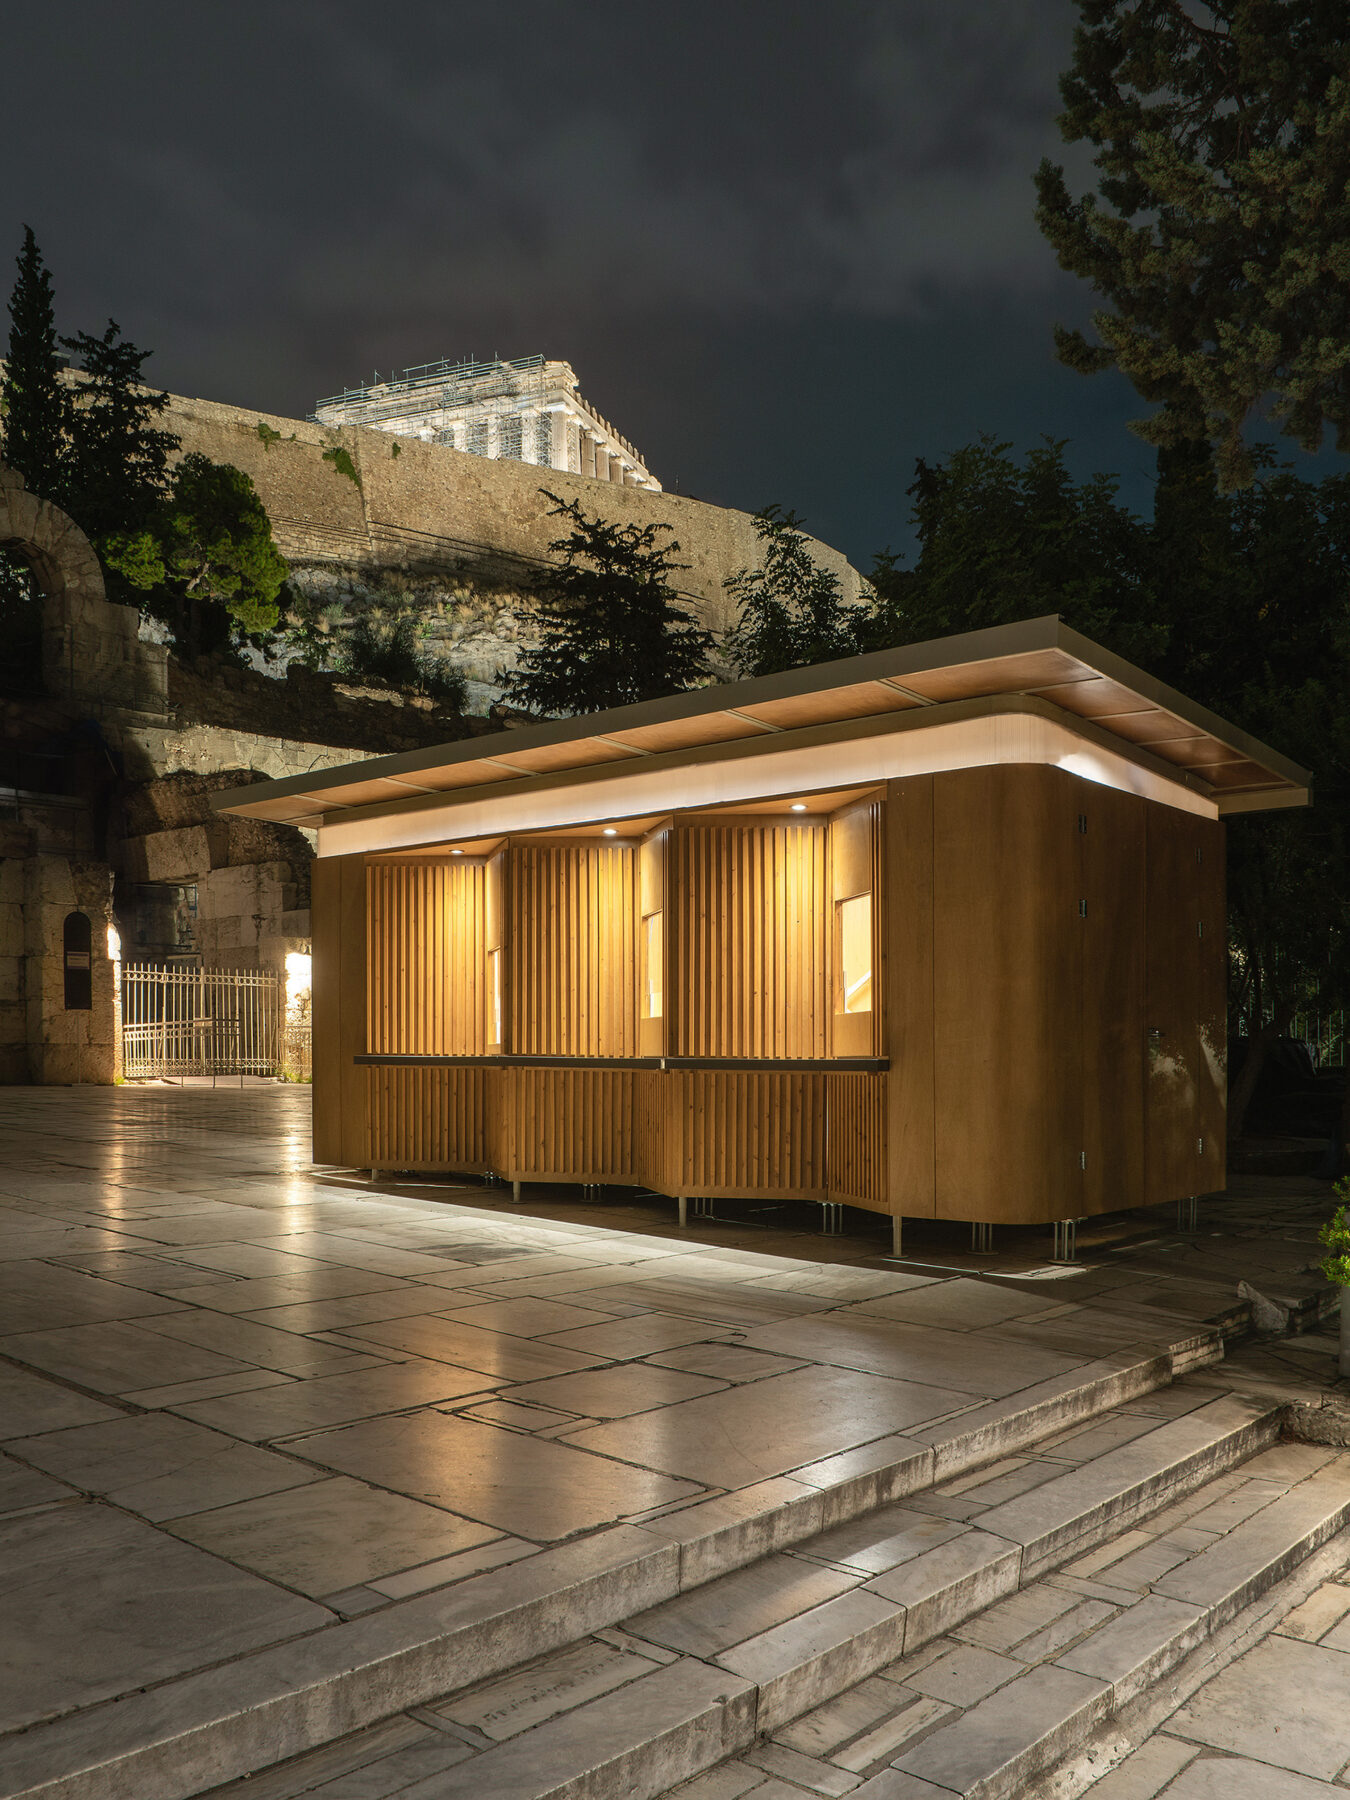 Archisearch GRAIL AWARDS 2024: 14 Βραβεία και 25 Έπαινοι στην πρώτη διοργάνωση των Ελληνικών Βραβείων Αρχιτεκτονικής, Εσωτερικών Χώρων και Φωτισμού